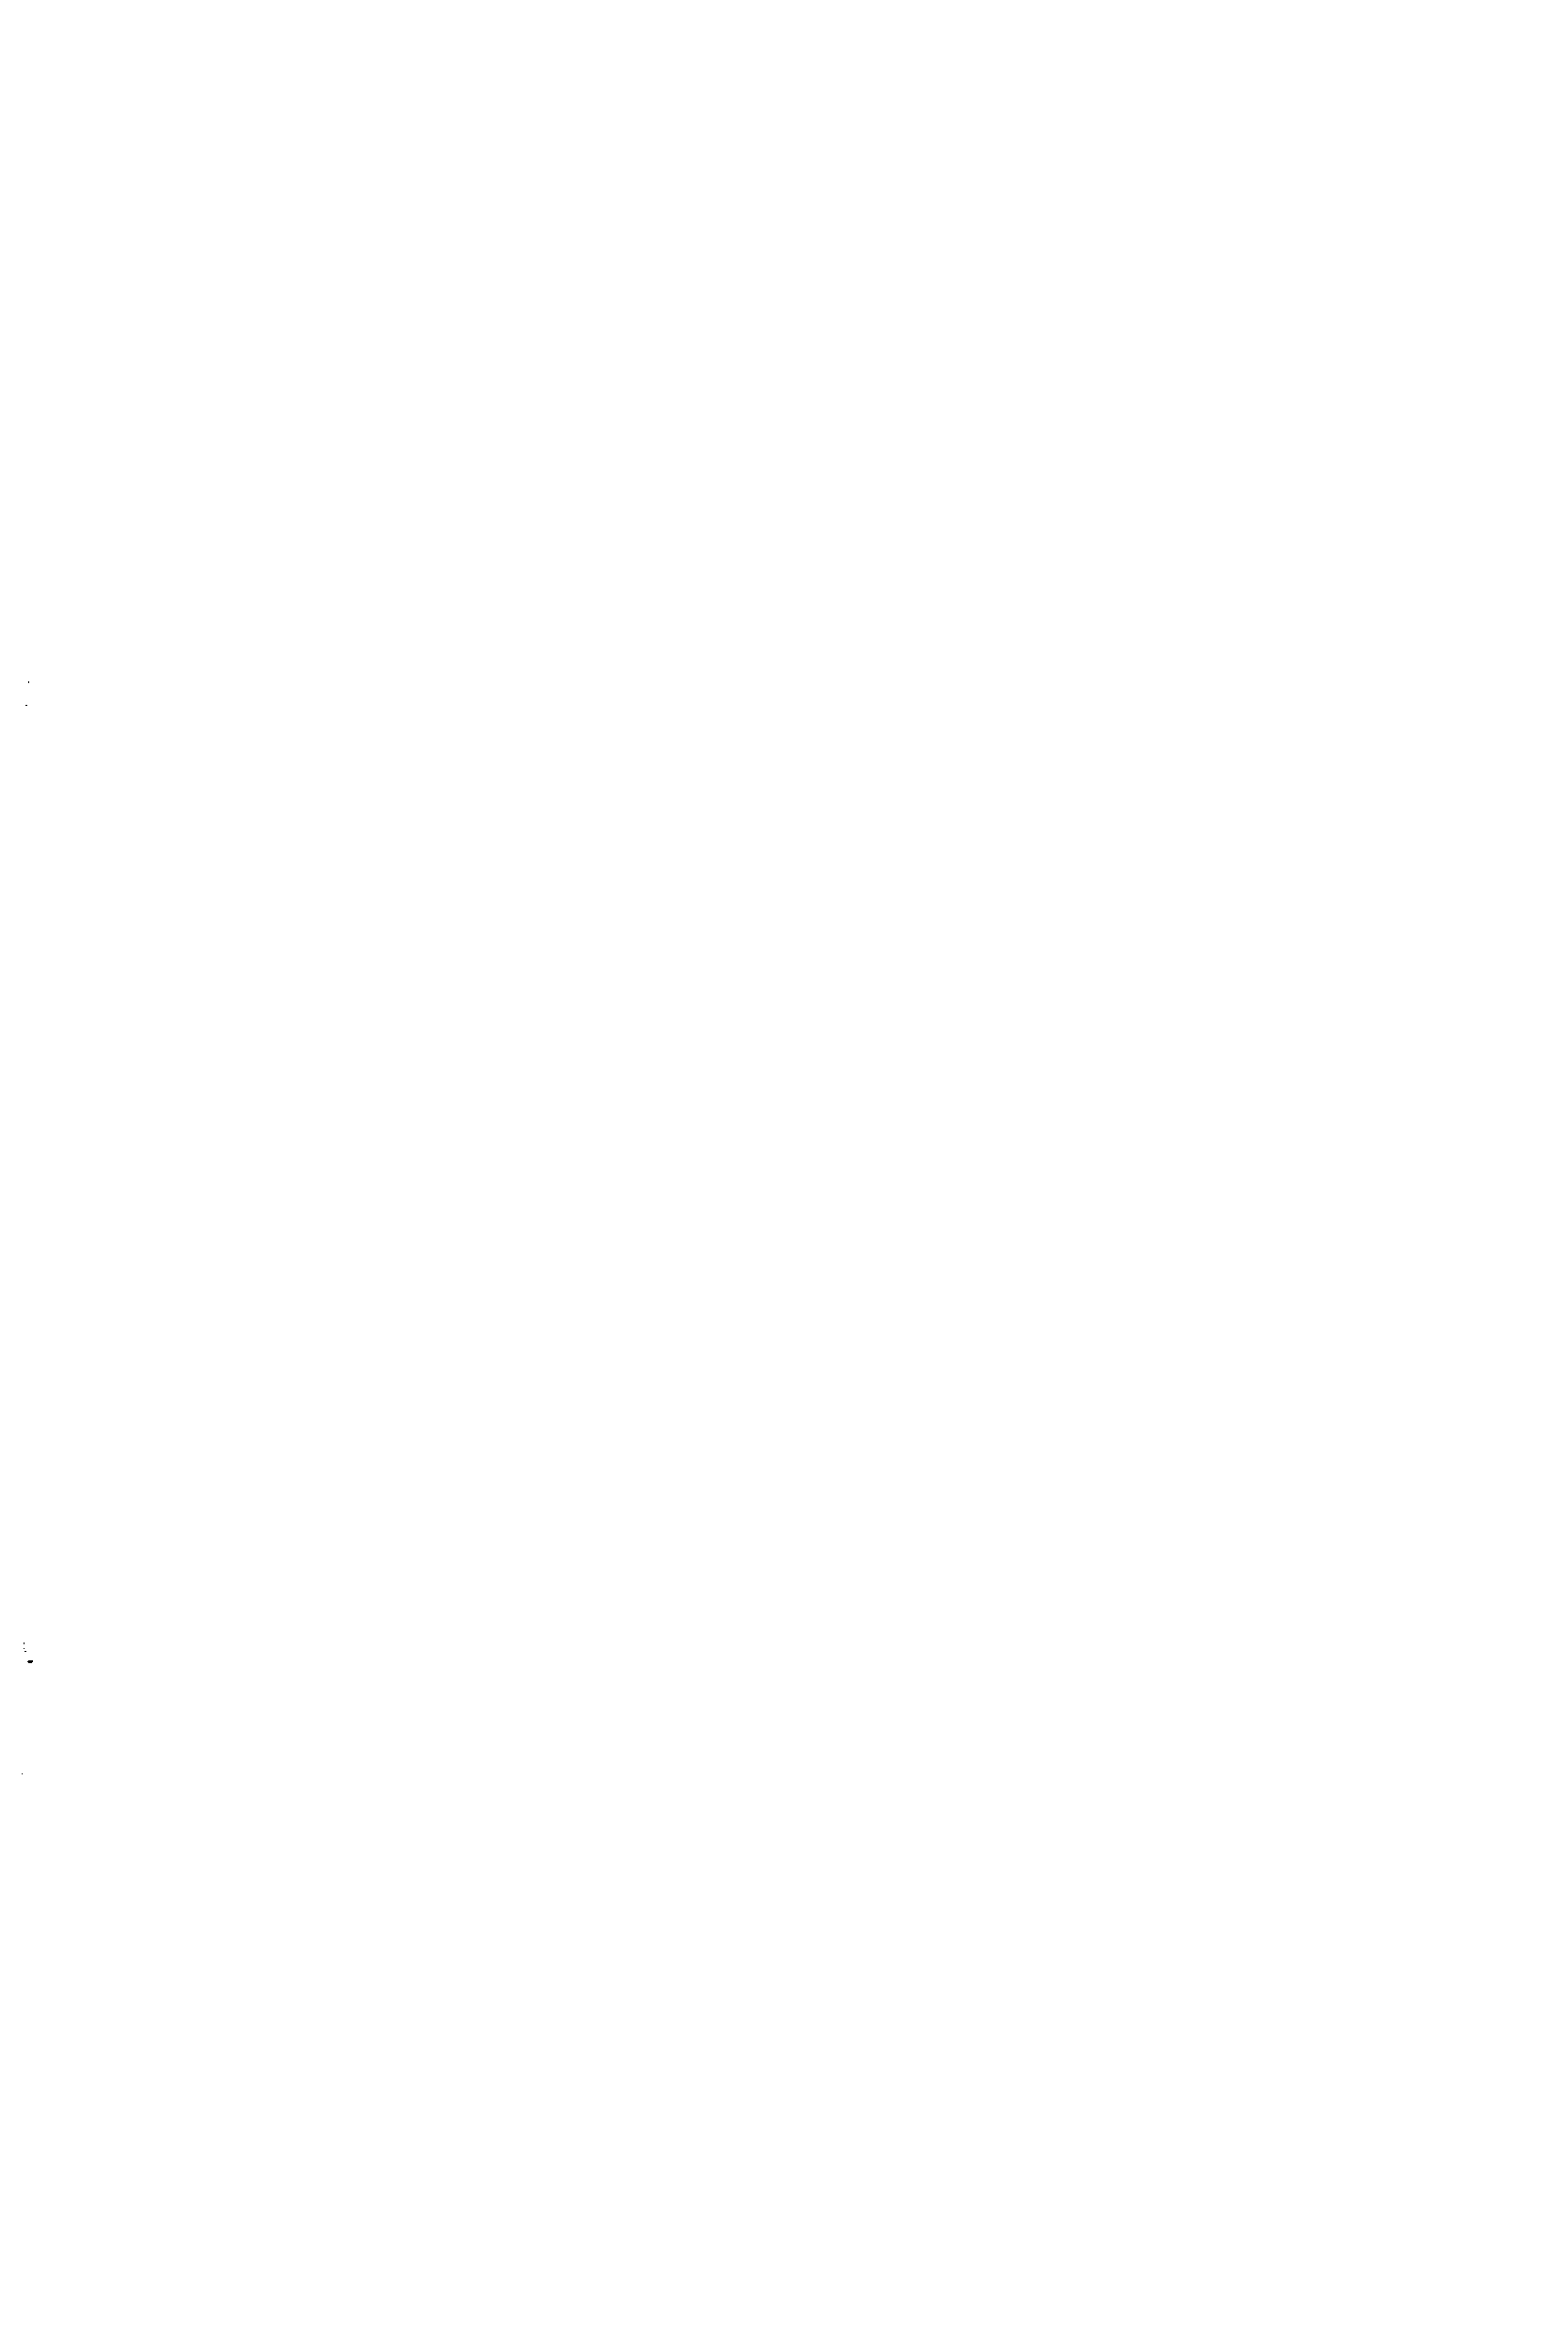 Рис. 20. Схема коррозионного элемента дифференциальной аэрации на трубопроводе (катодные участки — одинарная штриховка анодные участки—двойная штриховка) 
